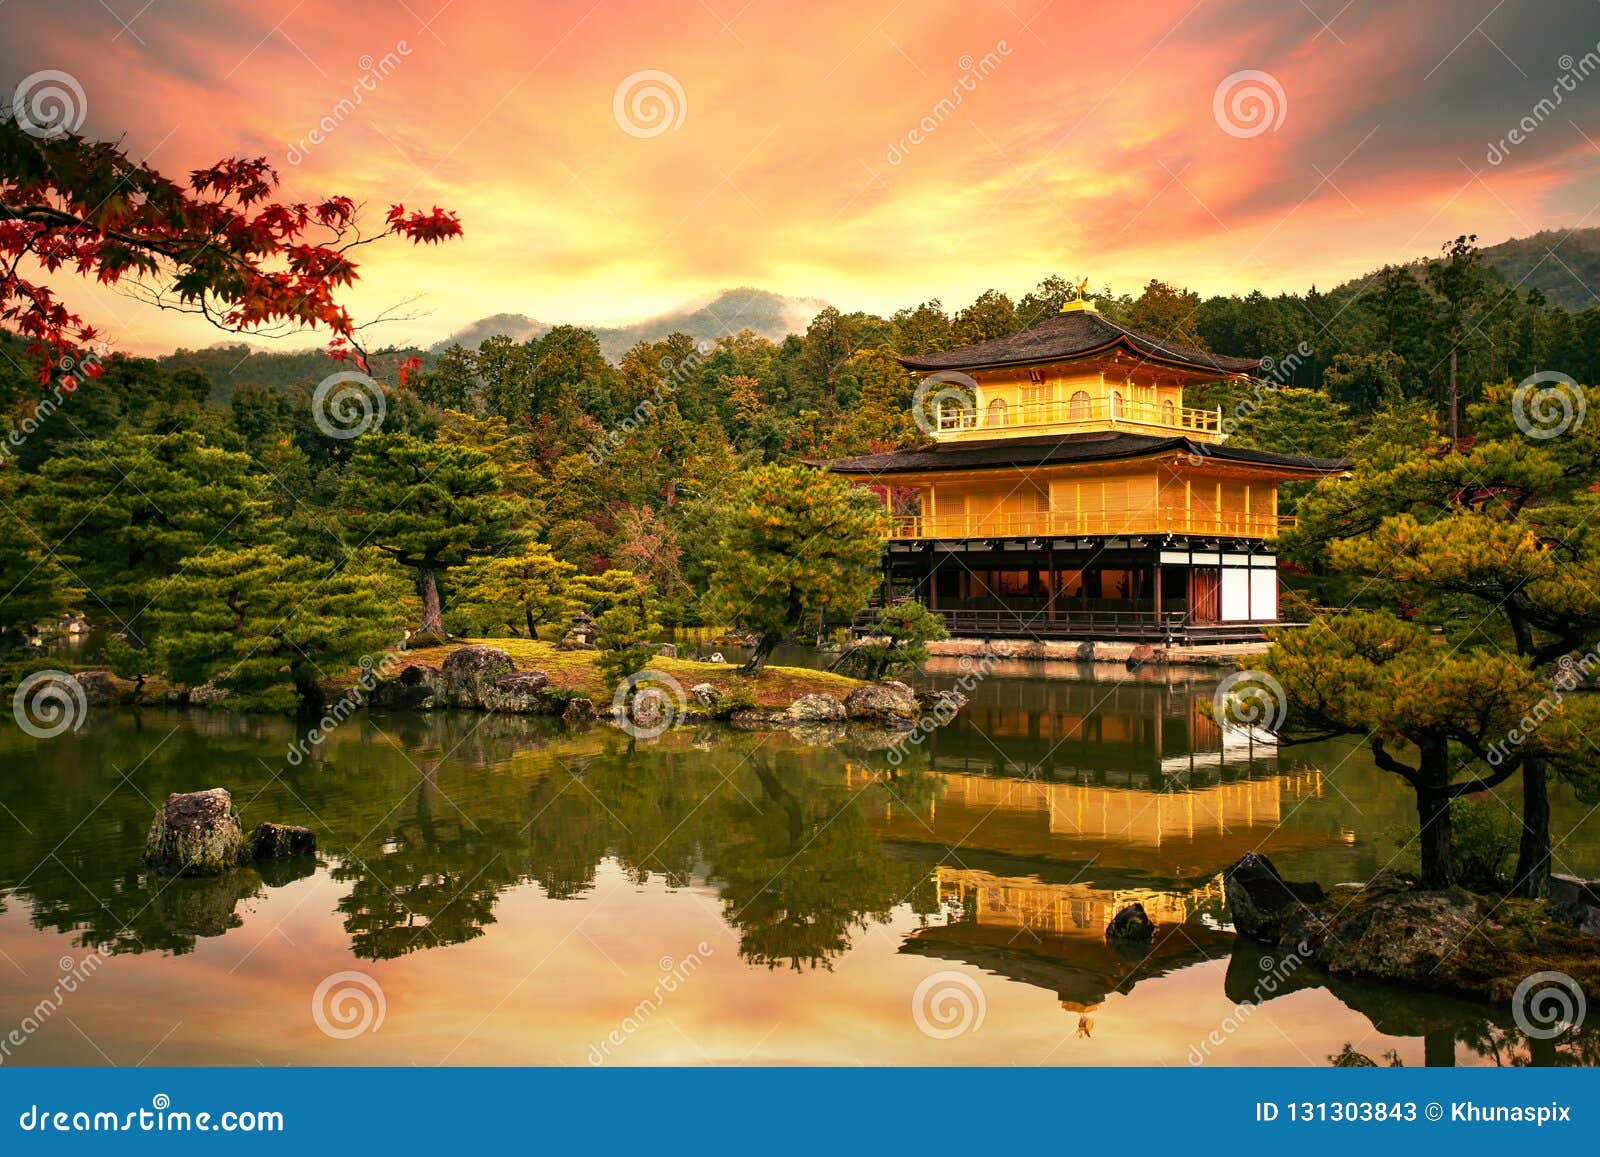 Templo De Kinkaku Ji Templo Do Pavilhao Dourado Kyoto Japao Um Imagem De Stock Imagem De Japao Pavilhao